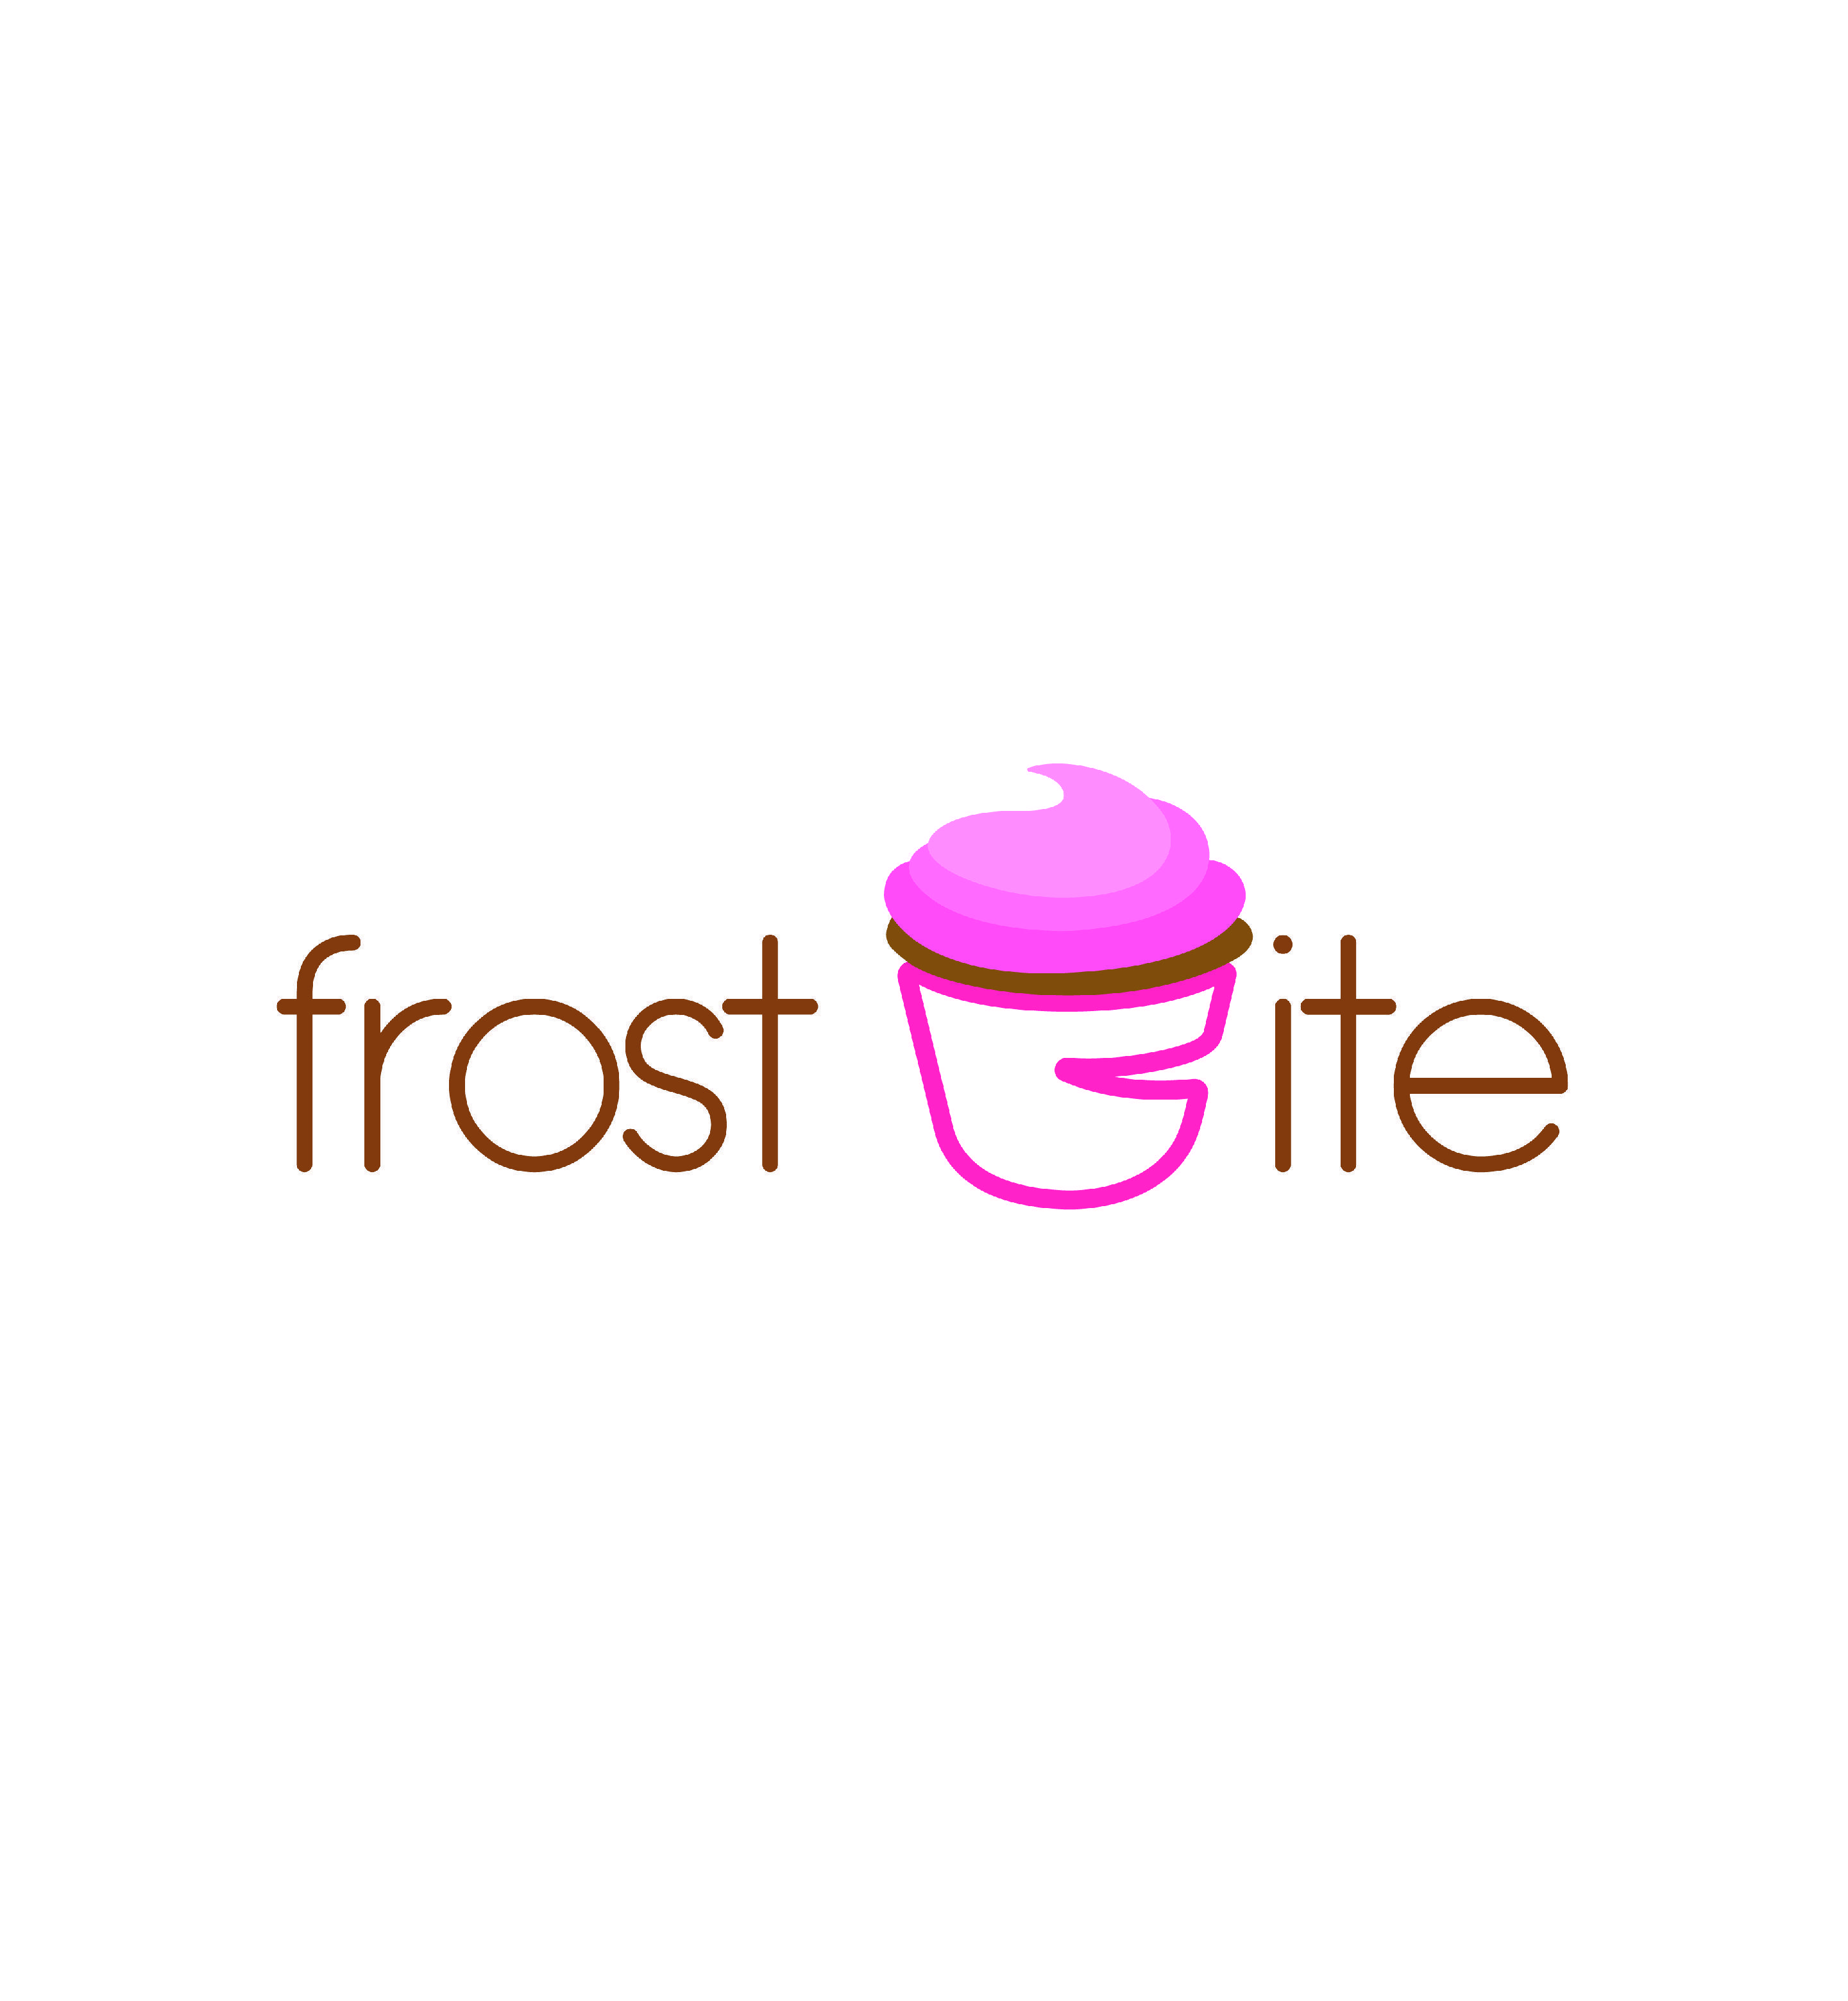 Frostbite Logo - FrostBite – Nasya Vaz